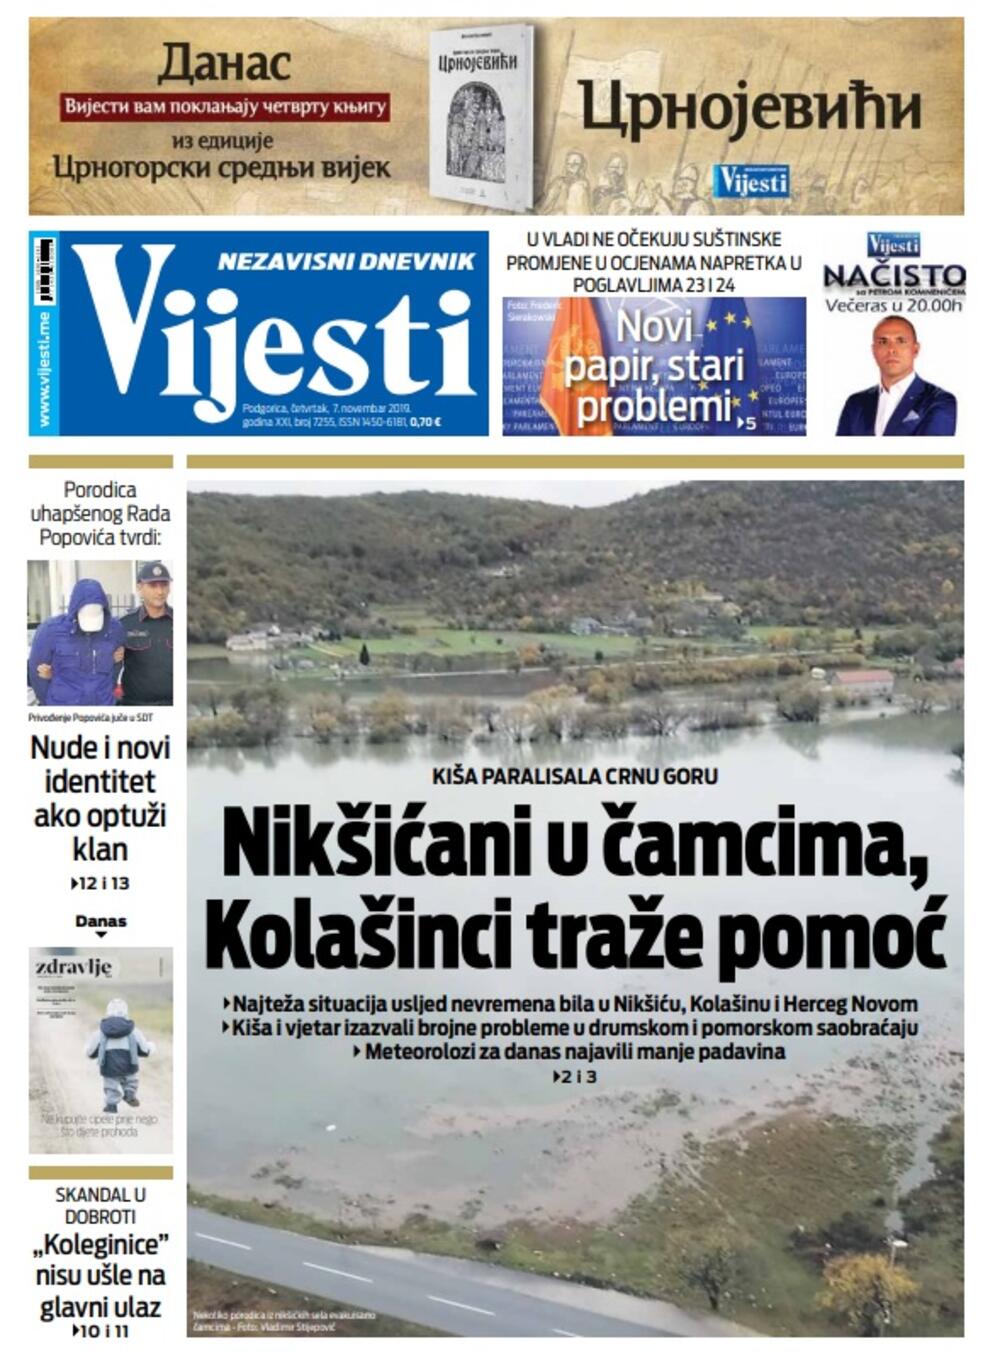 Naslovna strana "Vijesti" za 7. novembar 2019., Foto: "Vijesti"